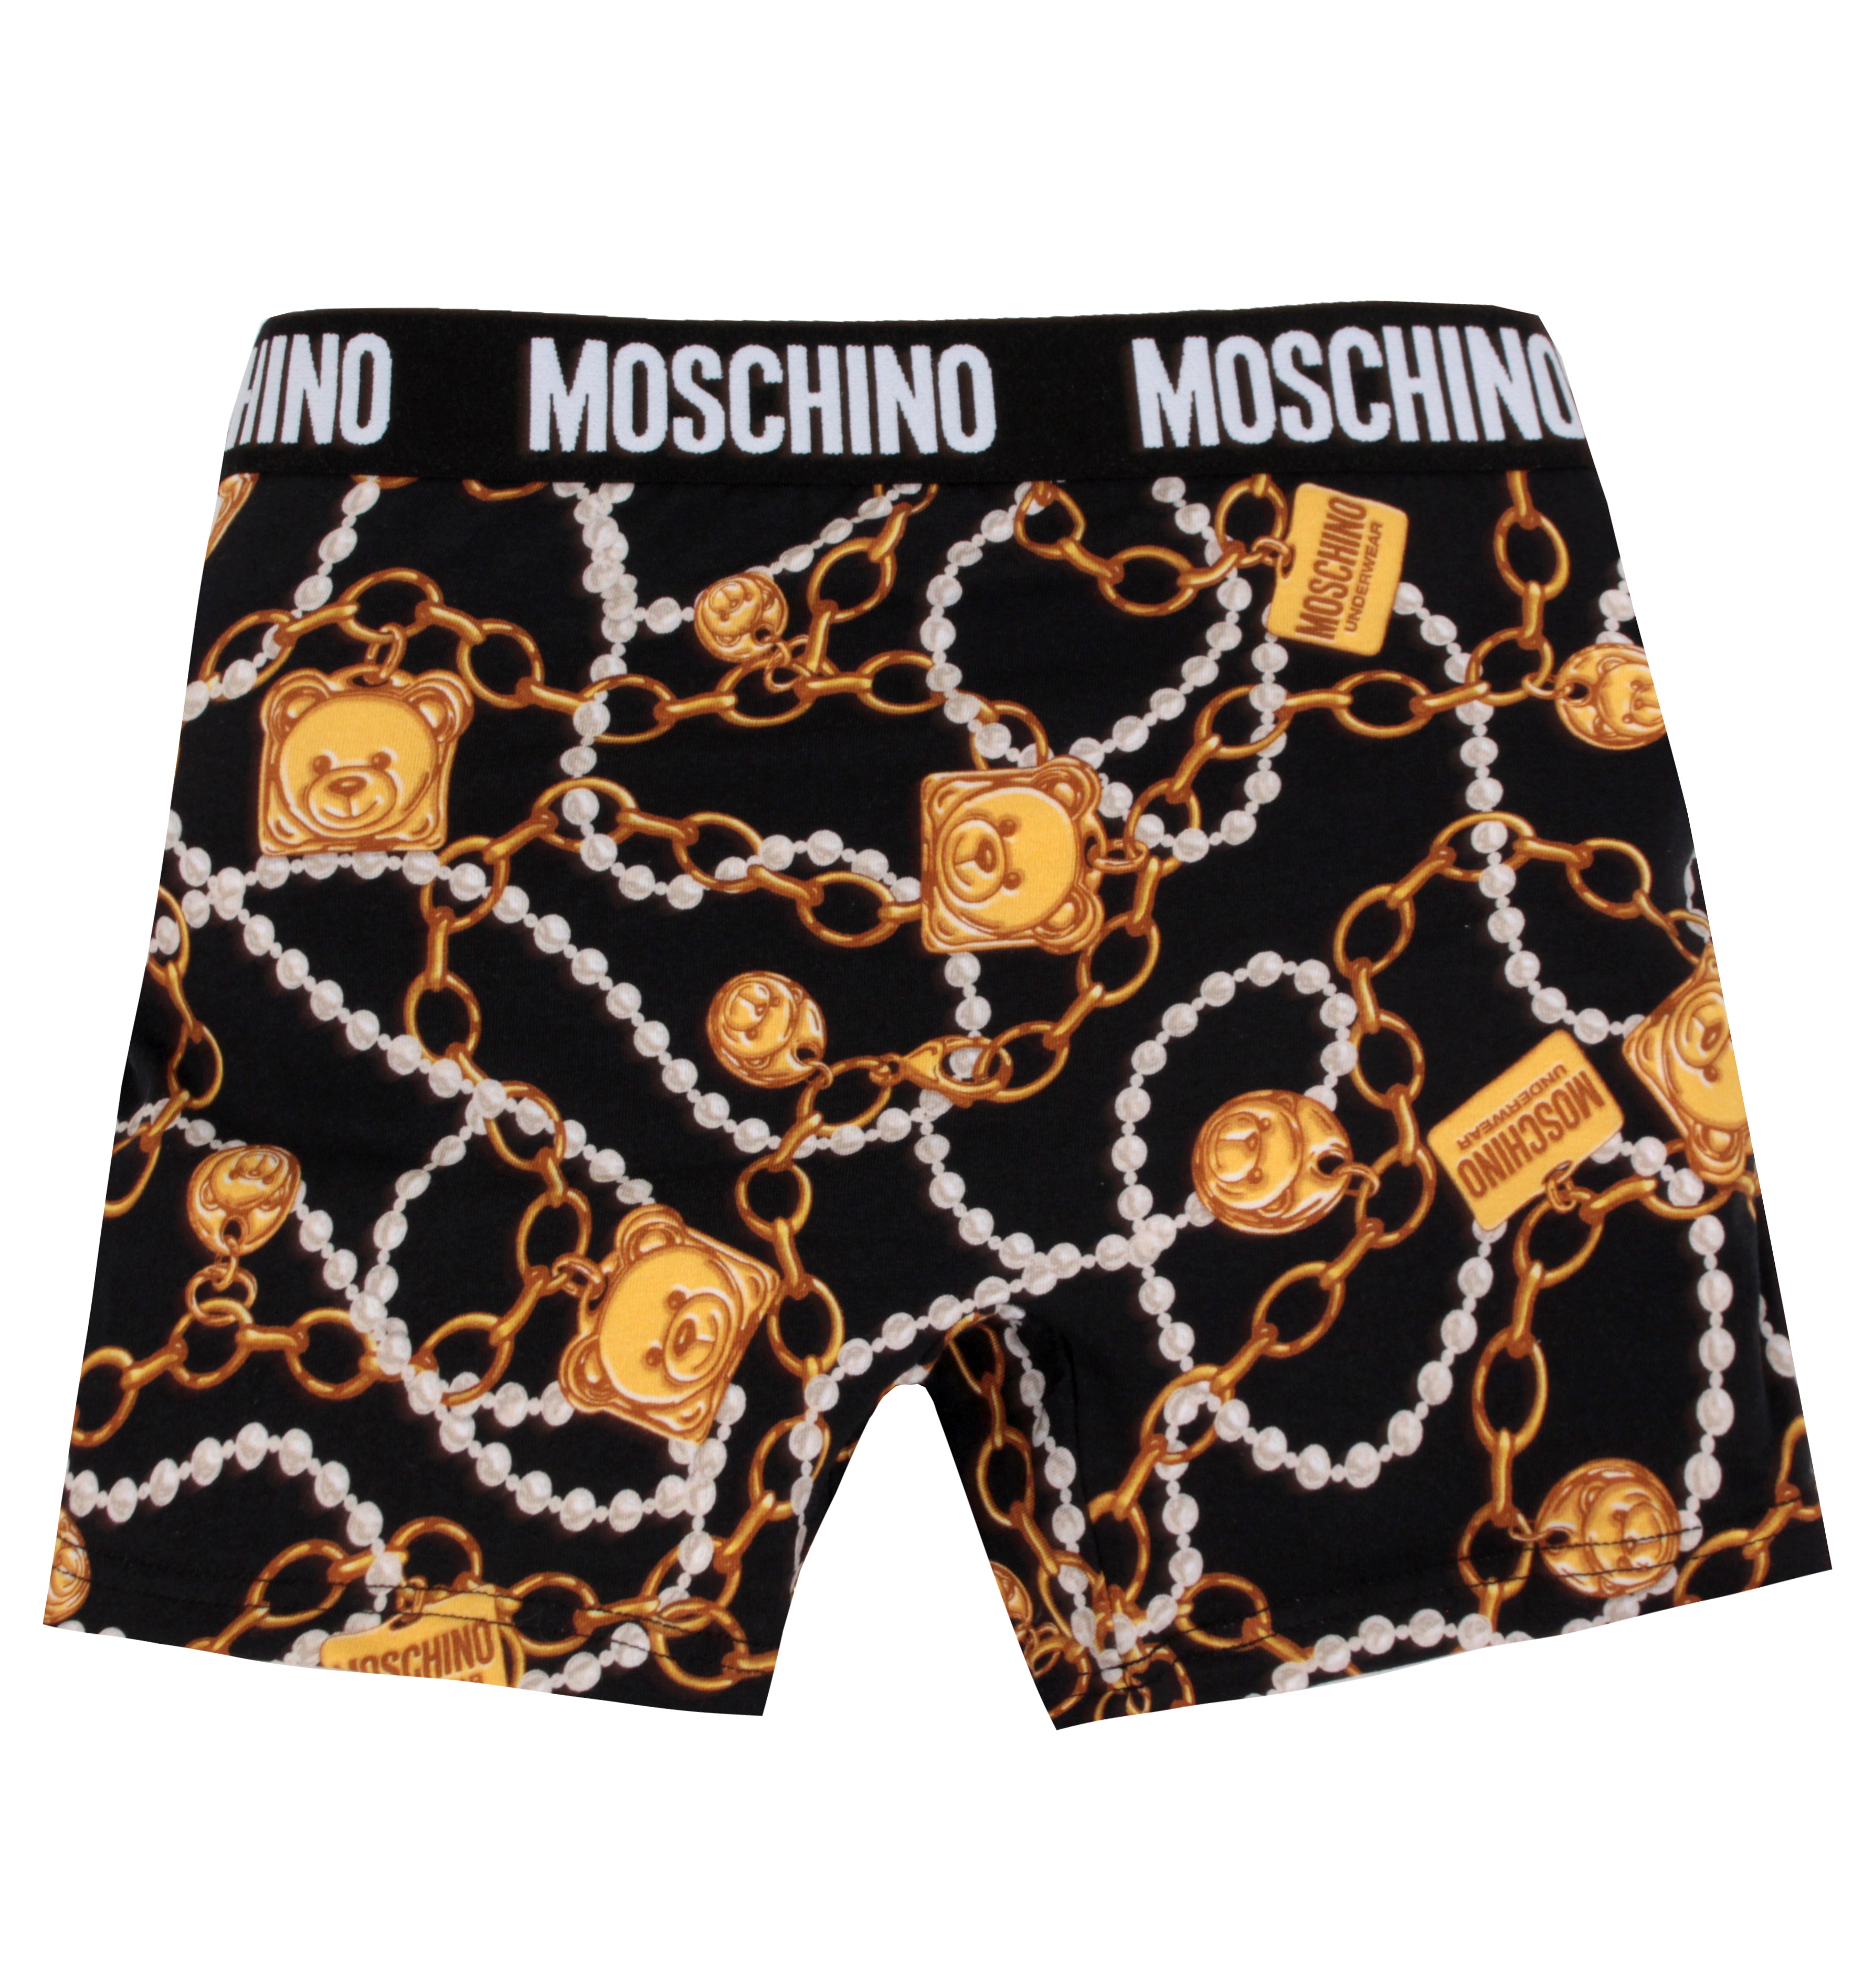 Moschino Underwear Side Stripe Logo Tee - Black 